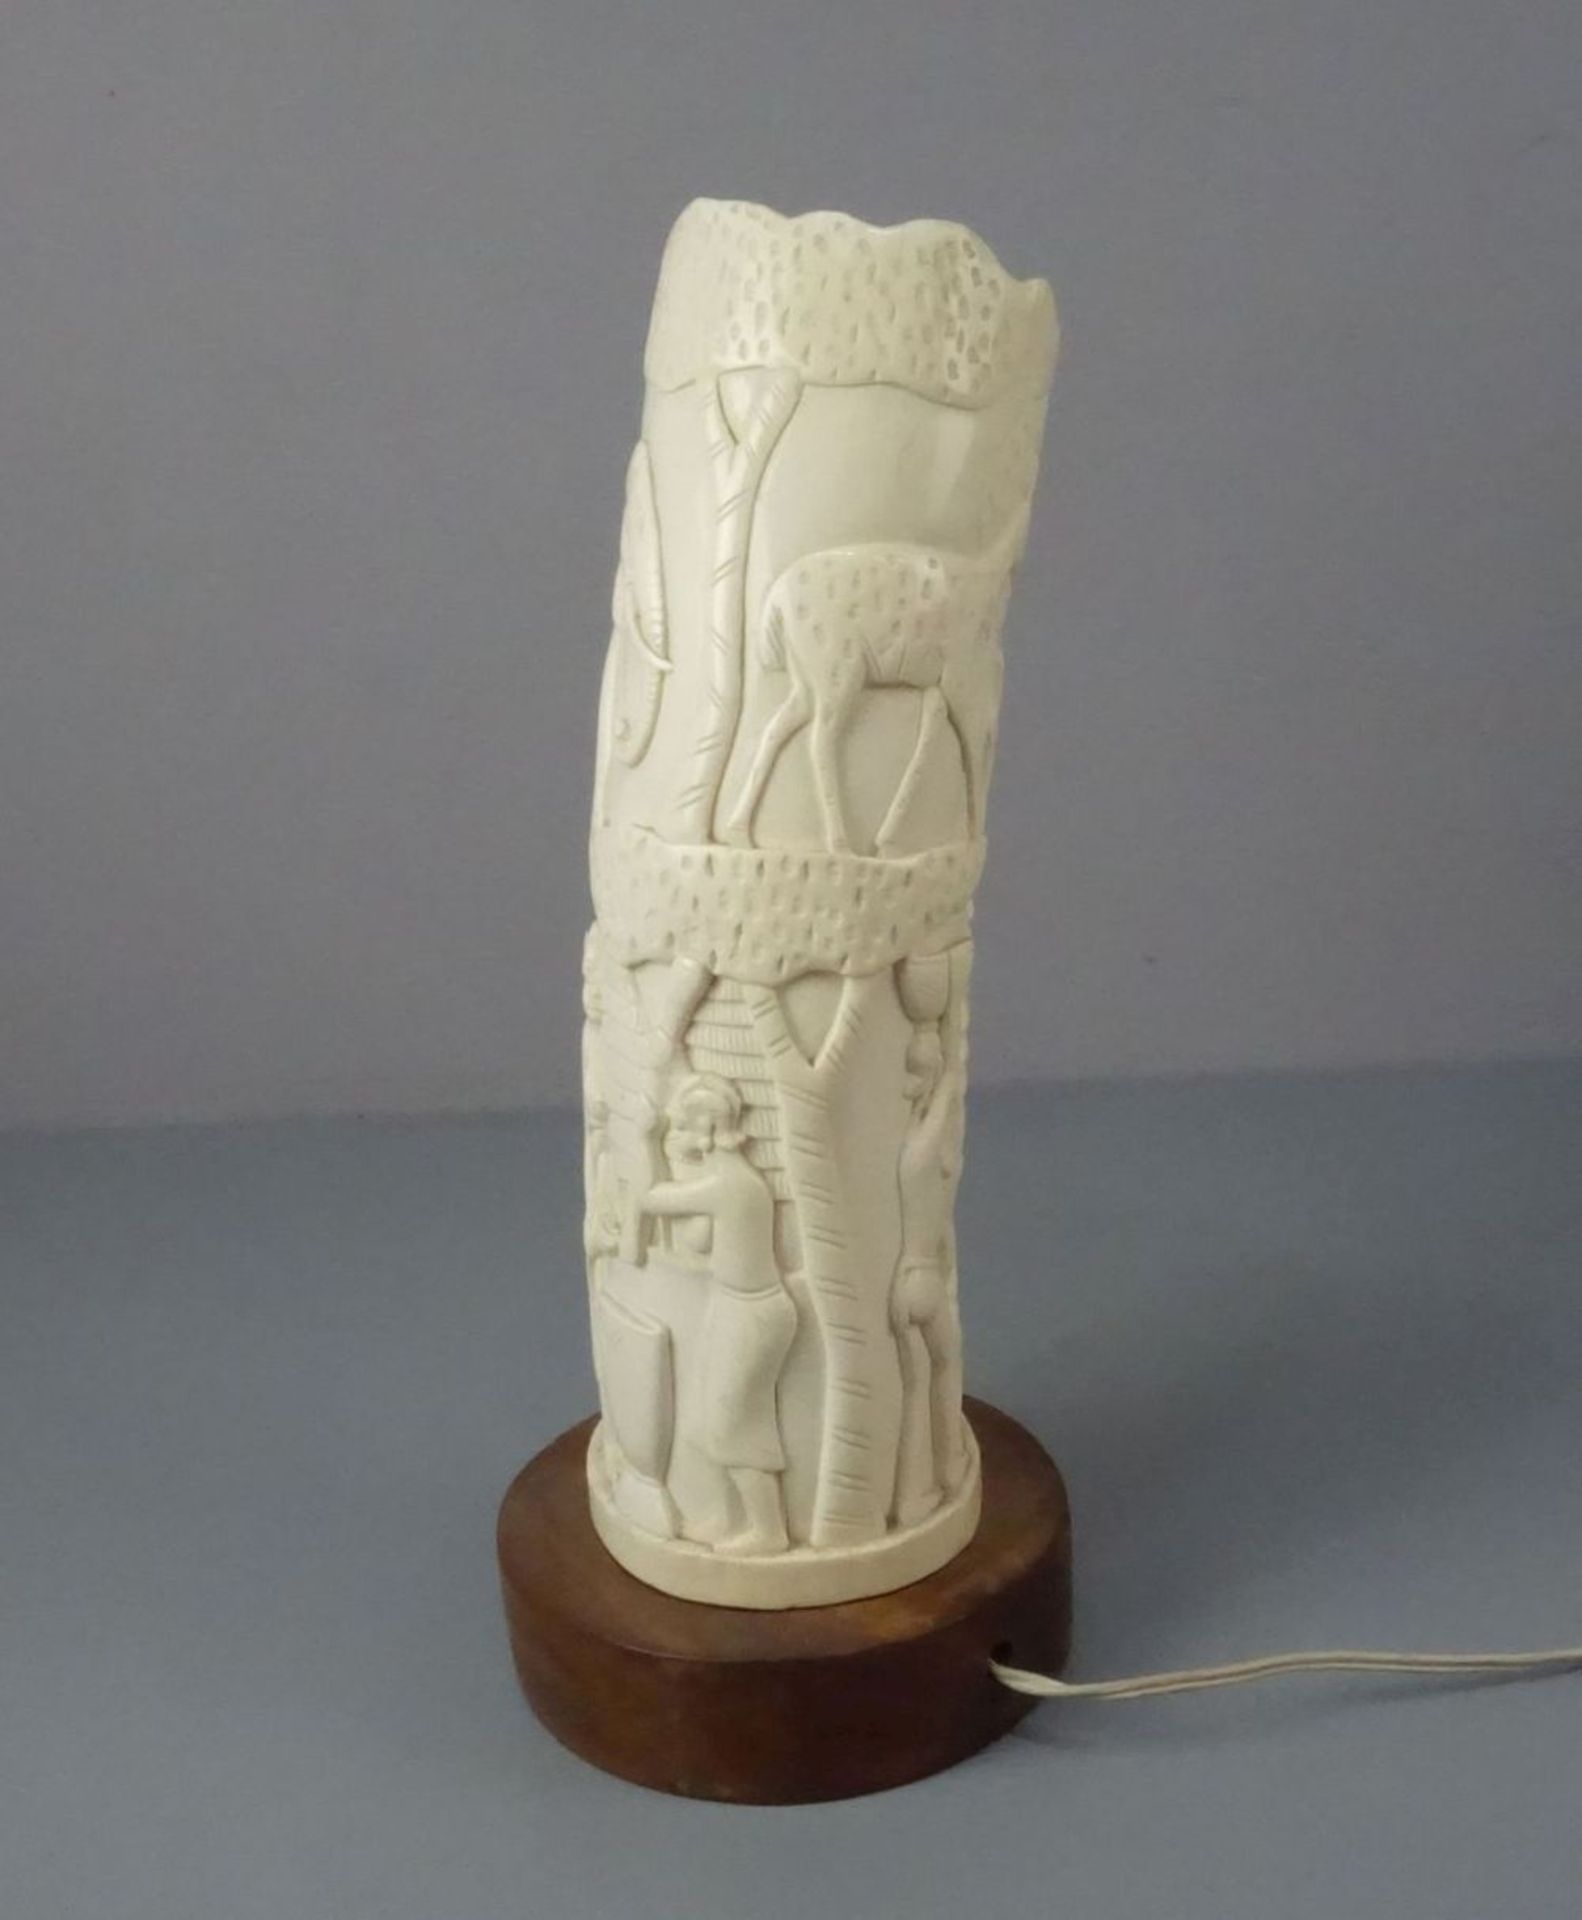 TISCHLAMPE MIT ELFENBEINSCHIRM / ELFENBEIN-TISCHLAMPE / ivory table lamp, Bein und Holz. Runder - Bild 2 aus 4